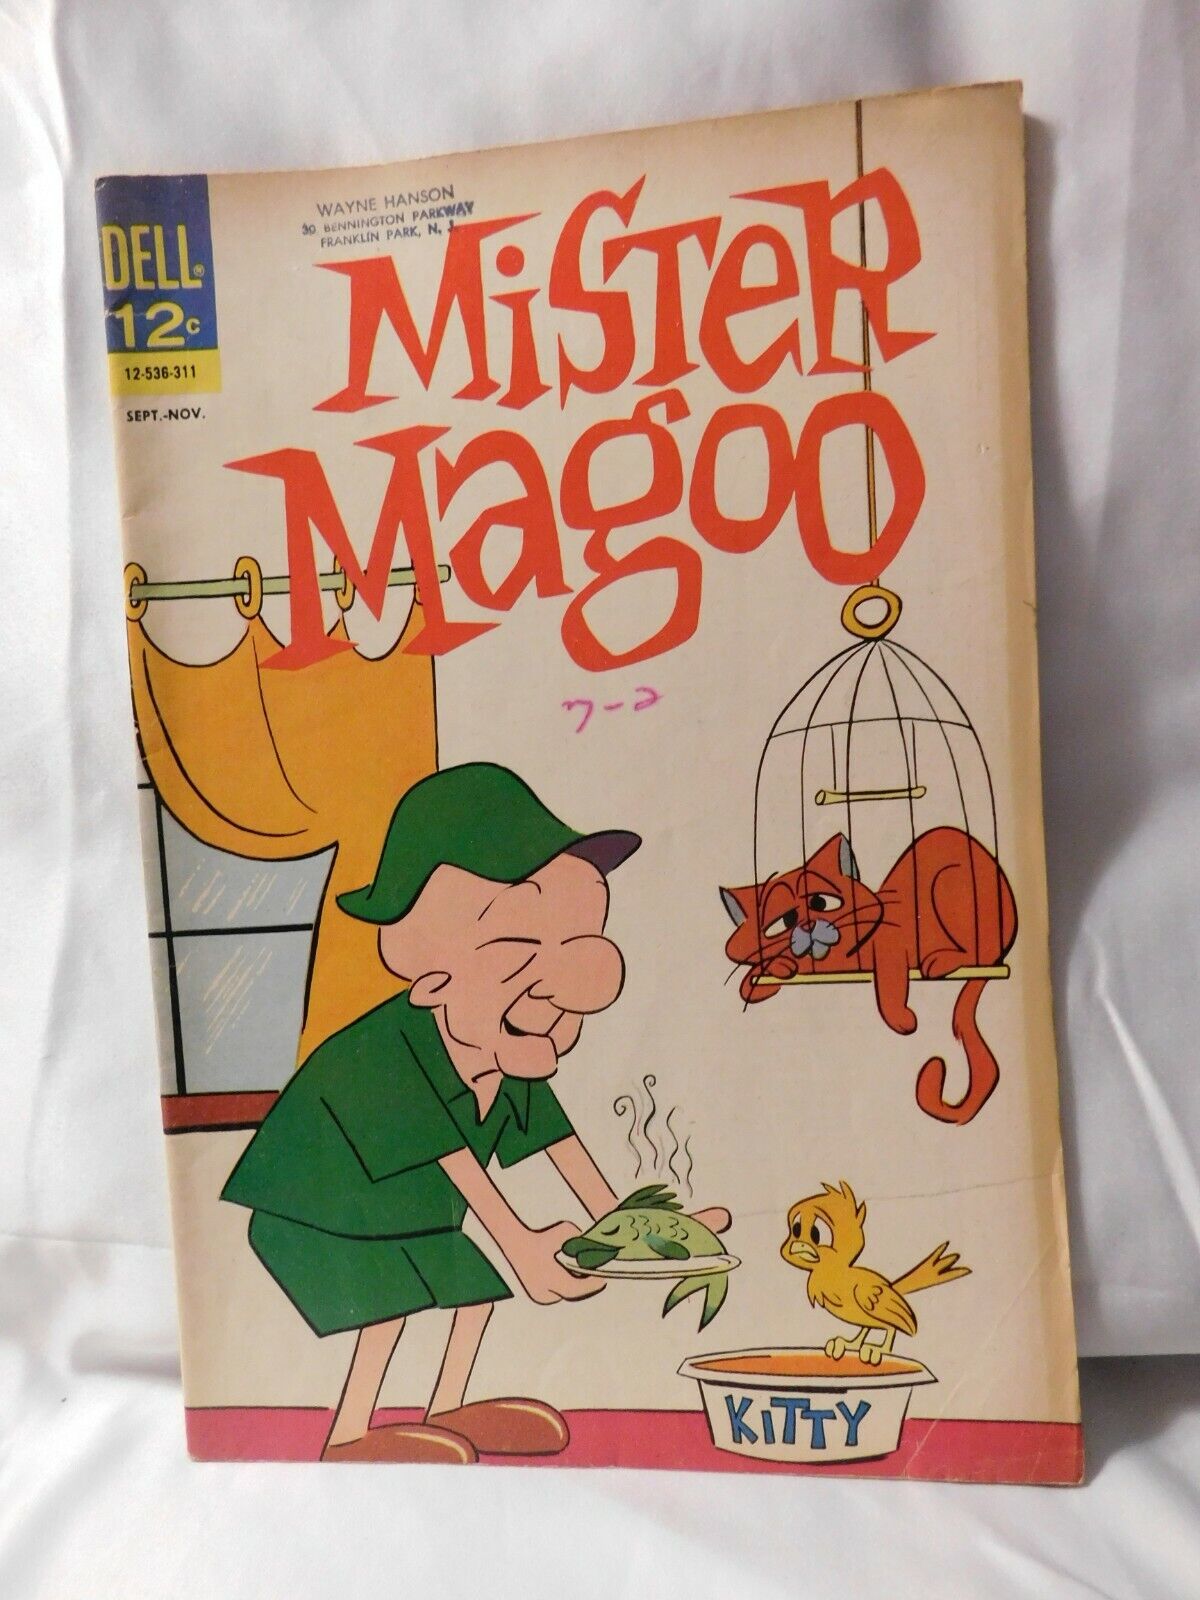 MISTER MAGOO #5 Silver Age Dell Comics 1963 